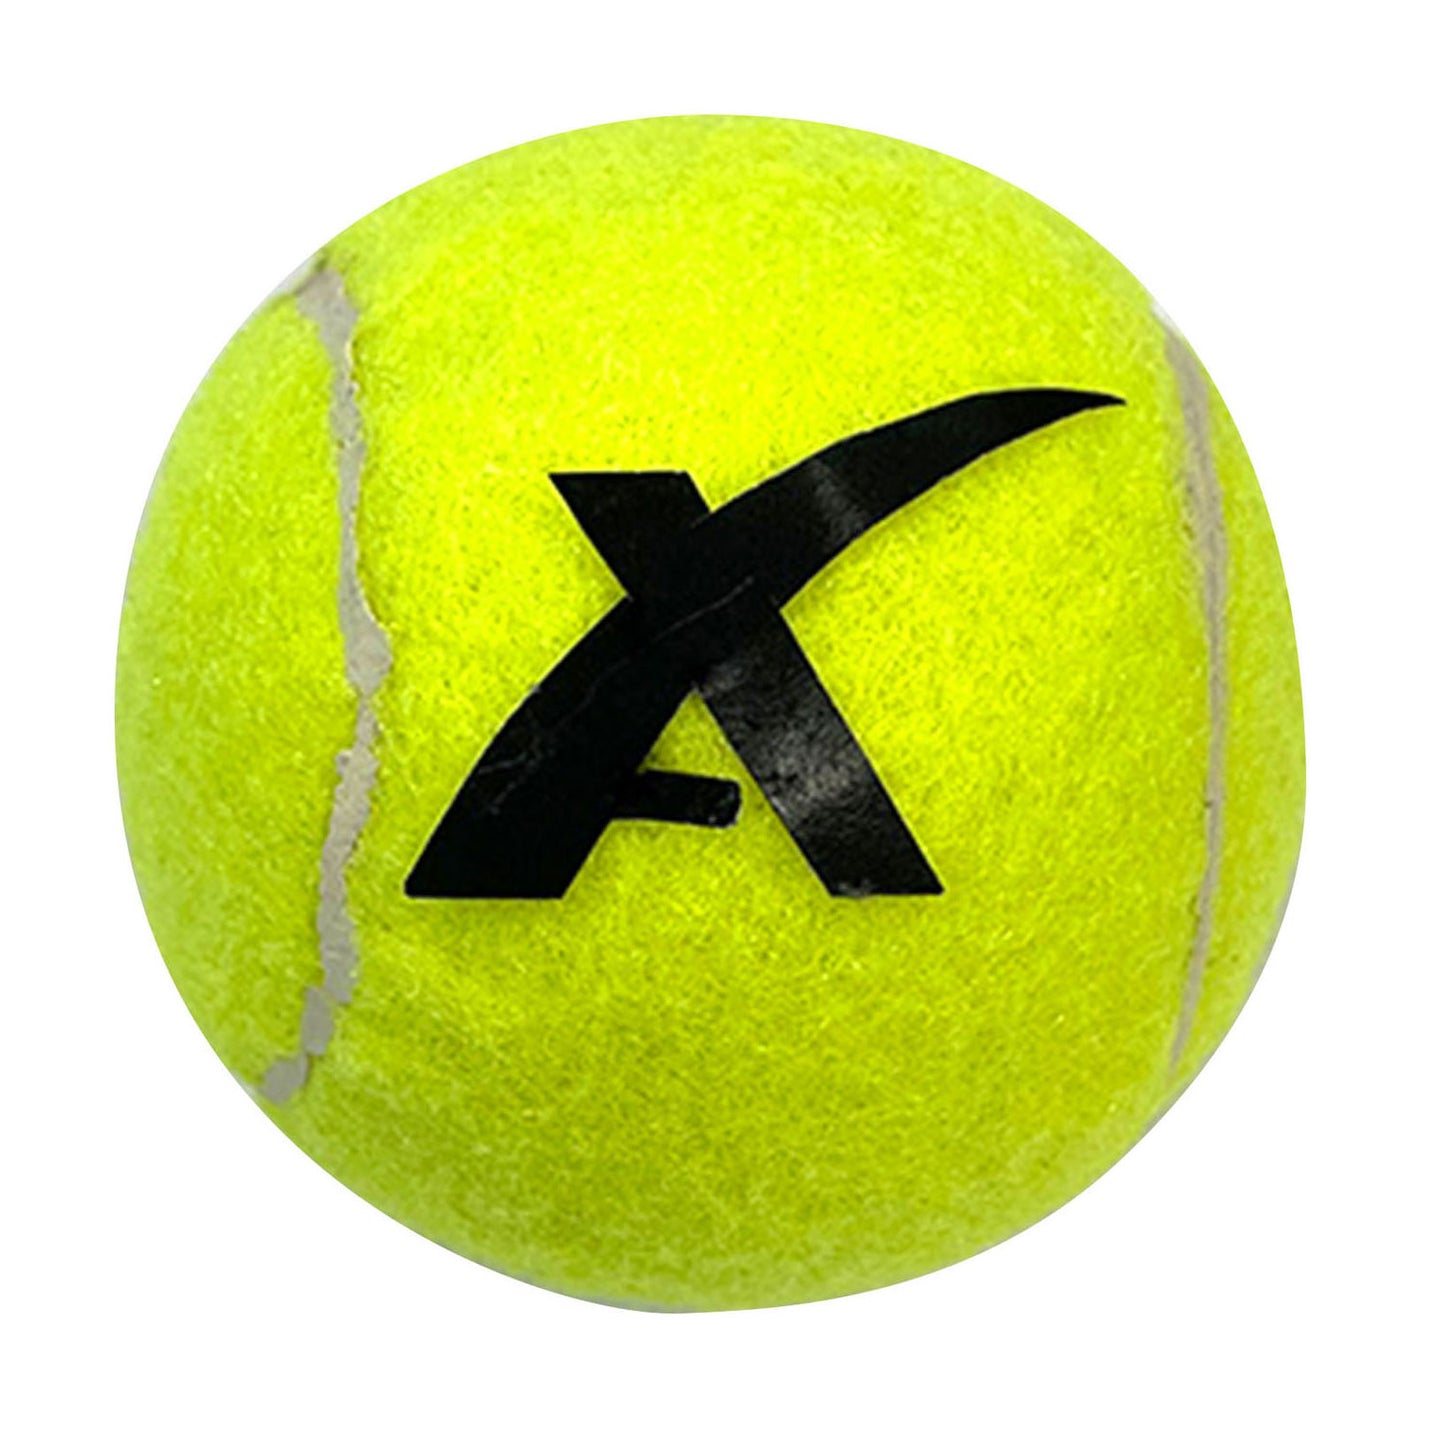 Toi-toys Adrenix Tennis Balls with Rescue Net, 3st.